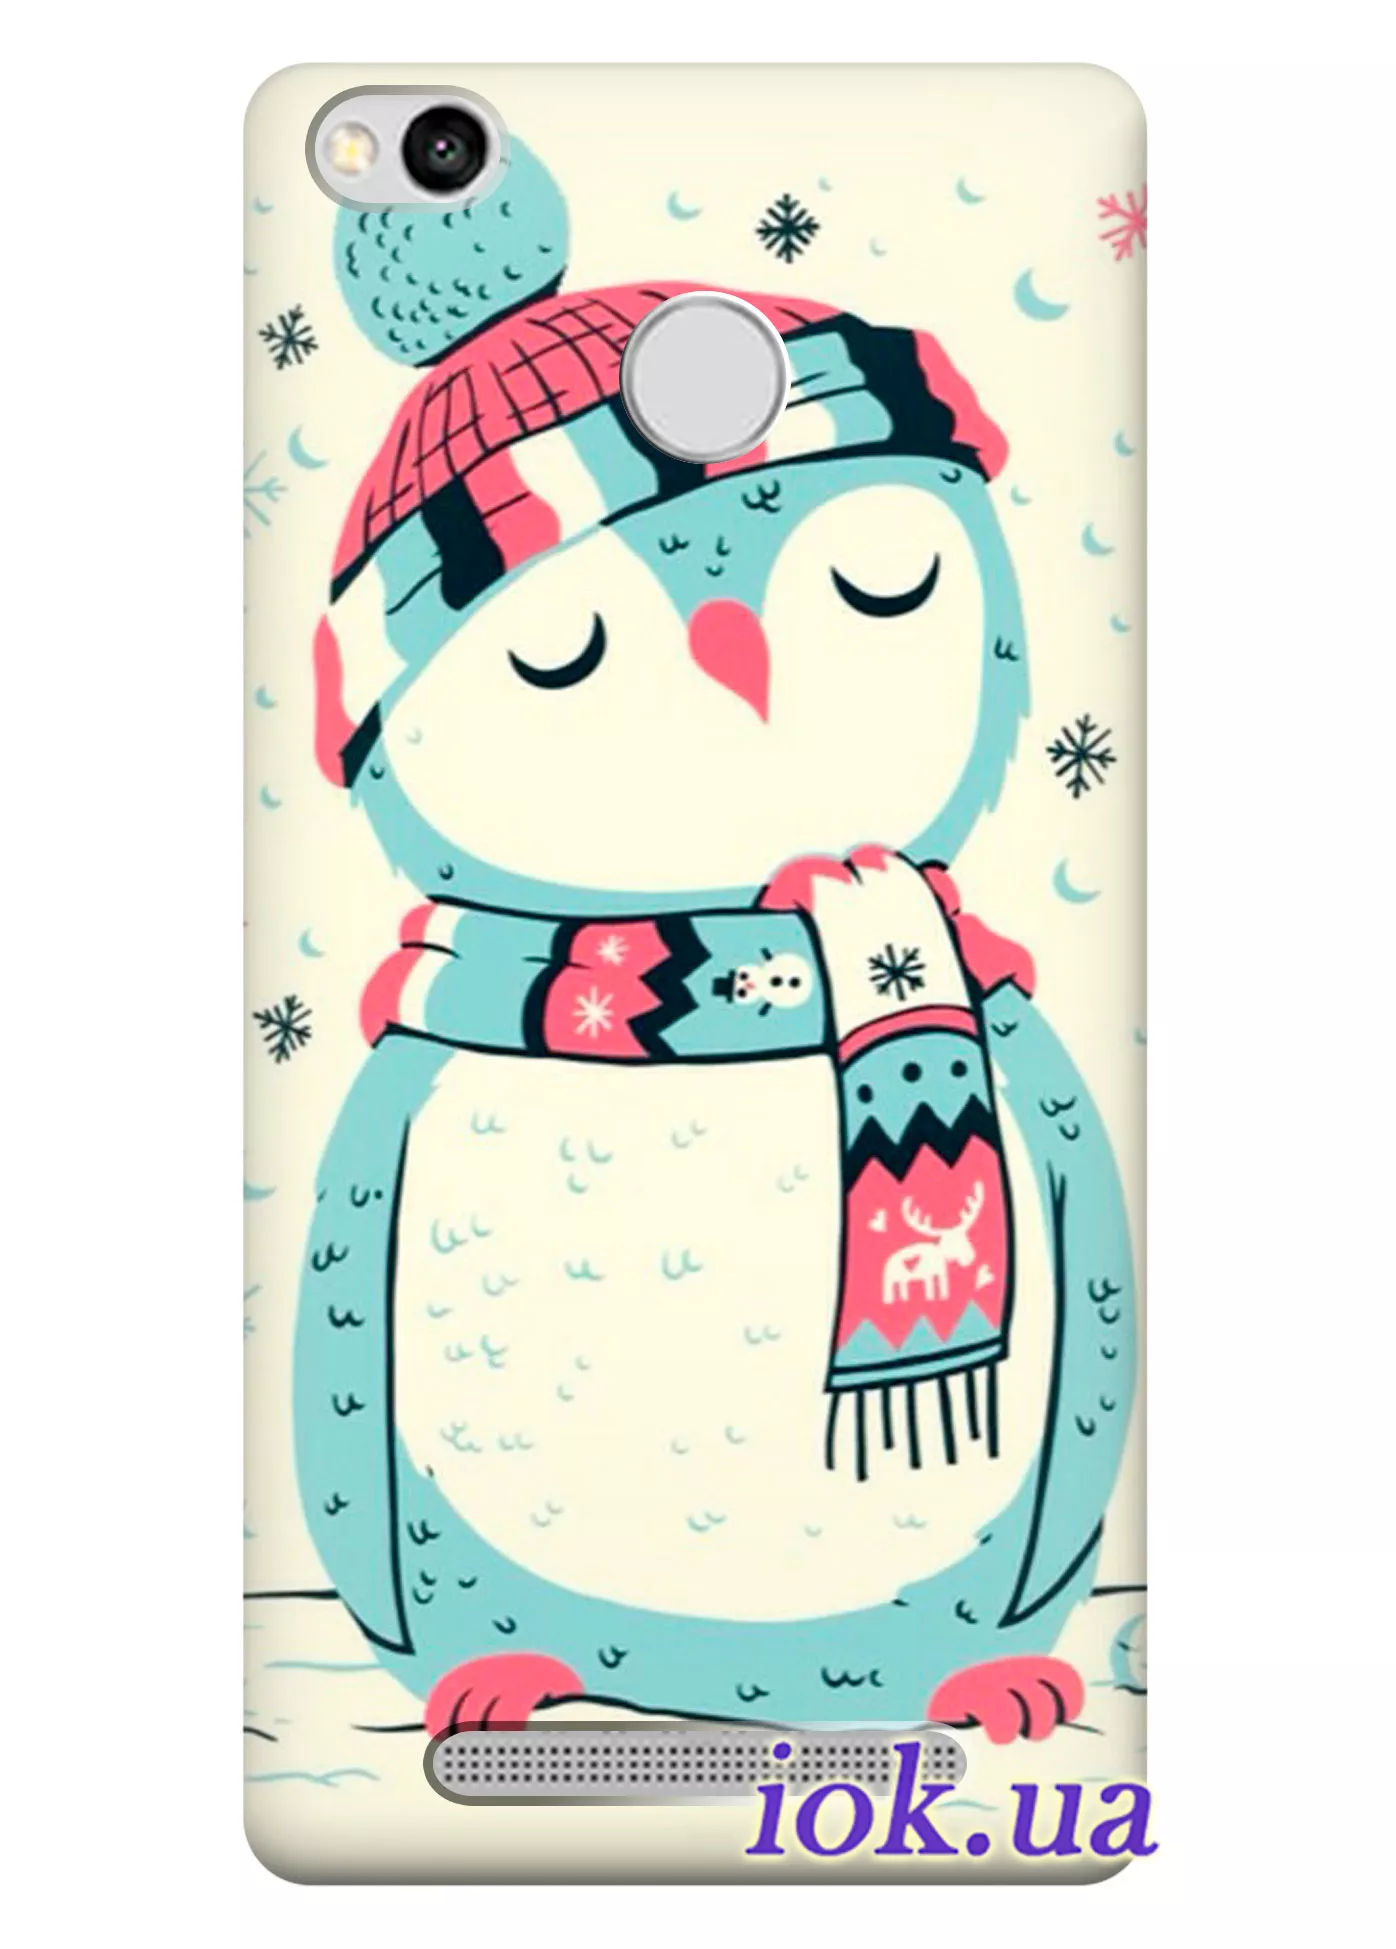 Чехол для Xiaomi Redmi 3 Pro - Пингвин в шапке